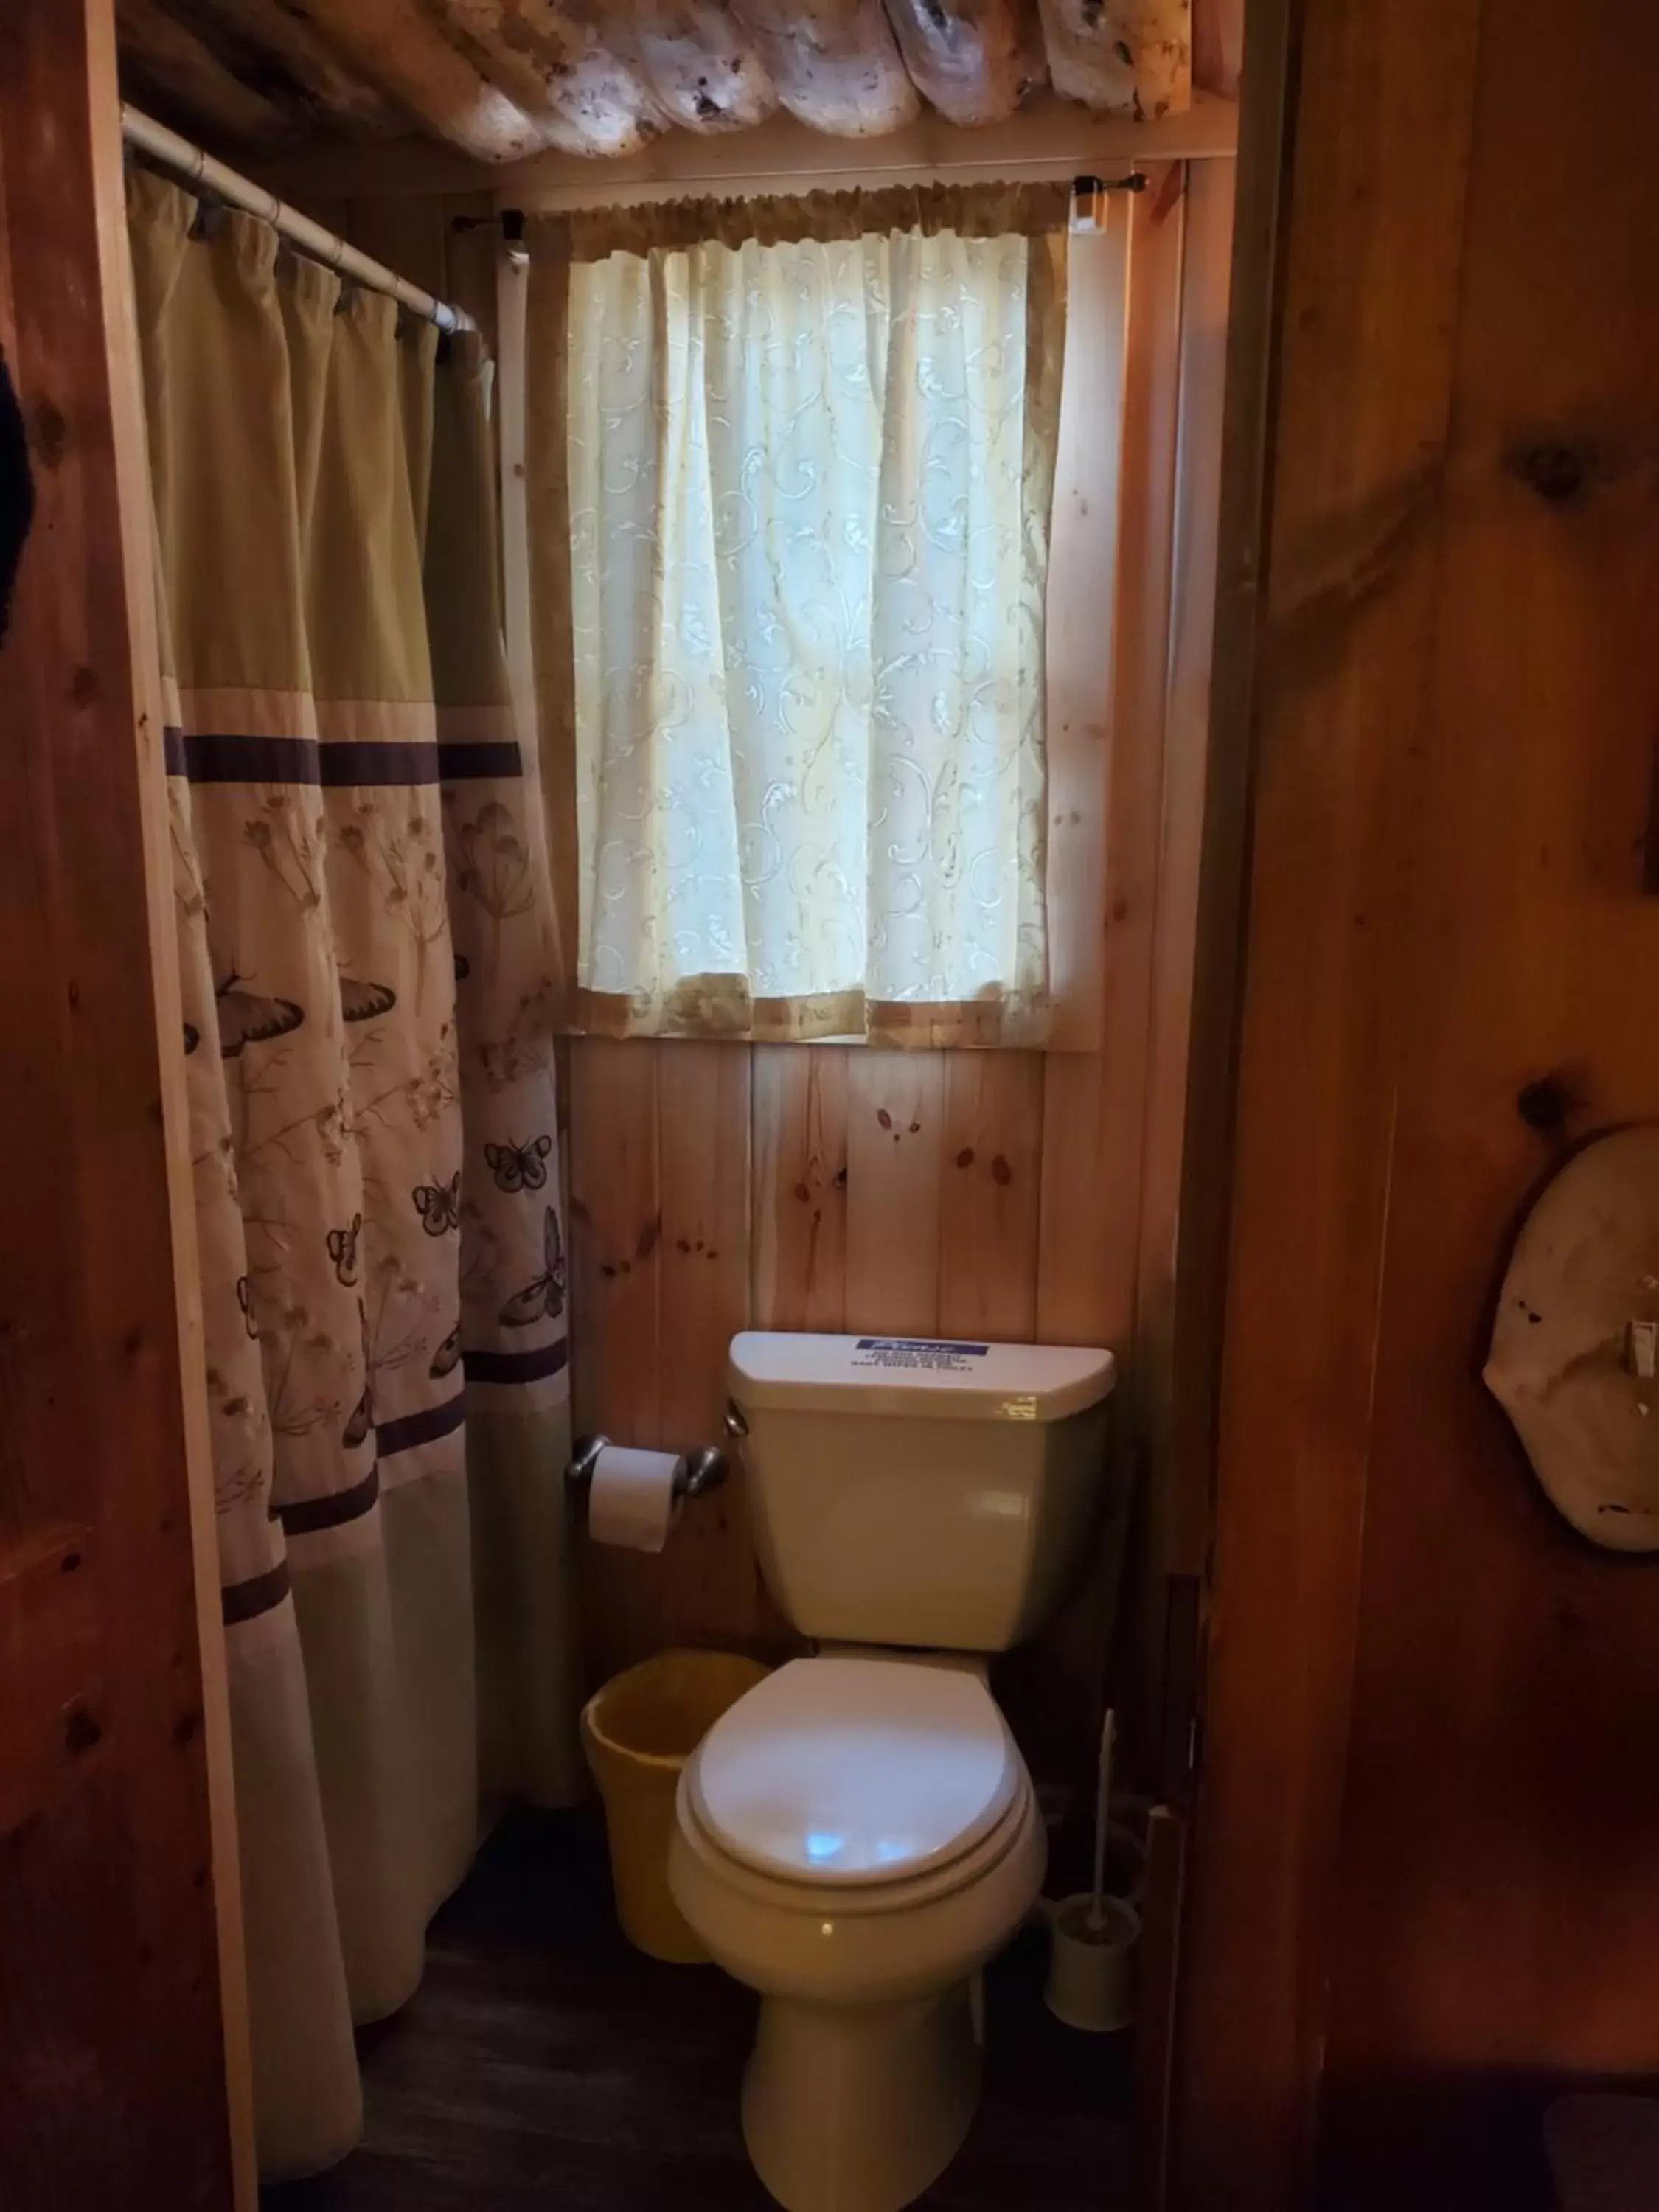 Bathroom in Pine Haven Resort